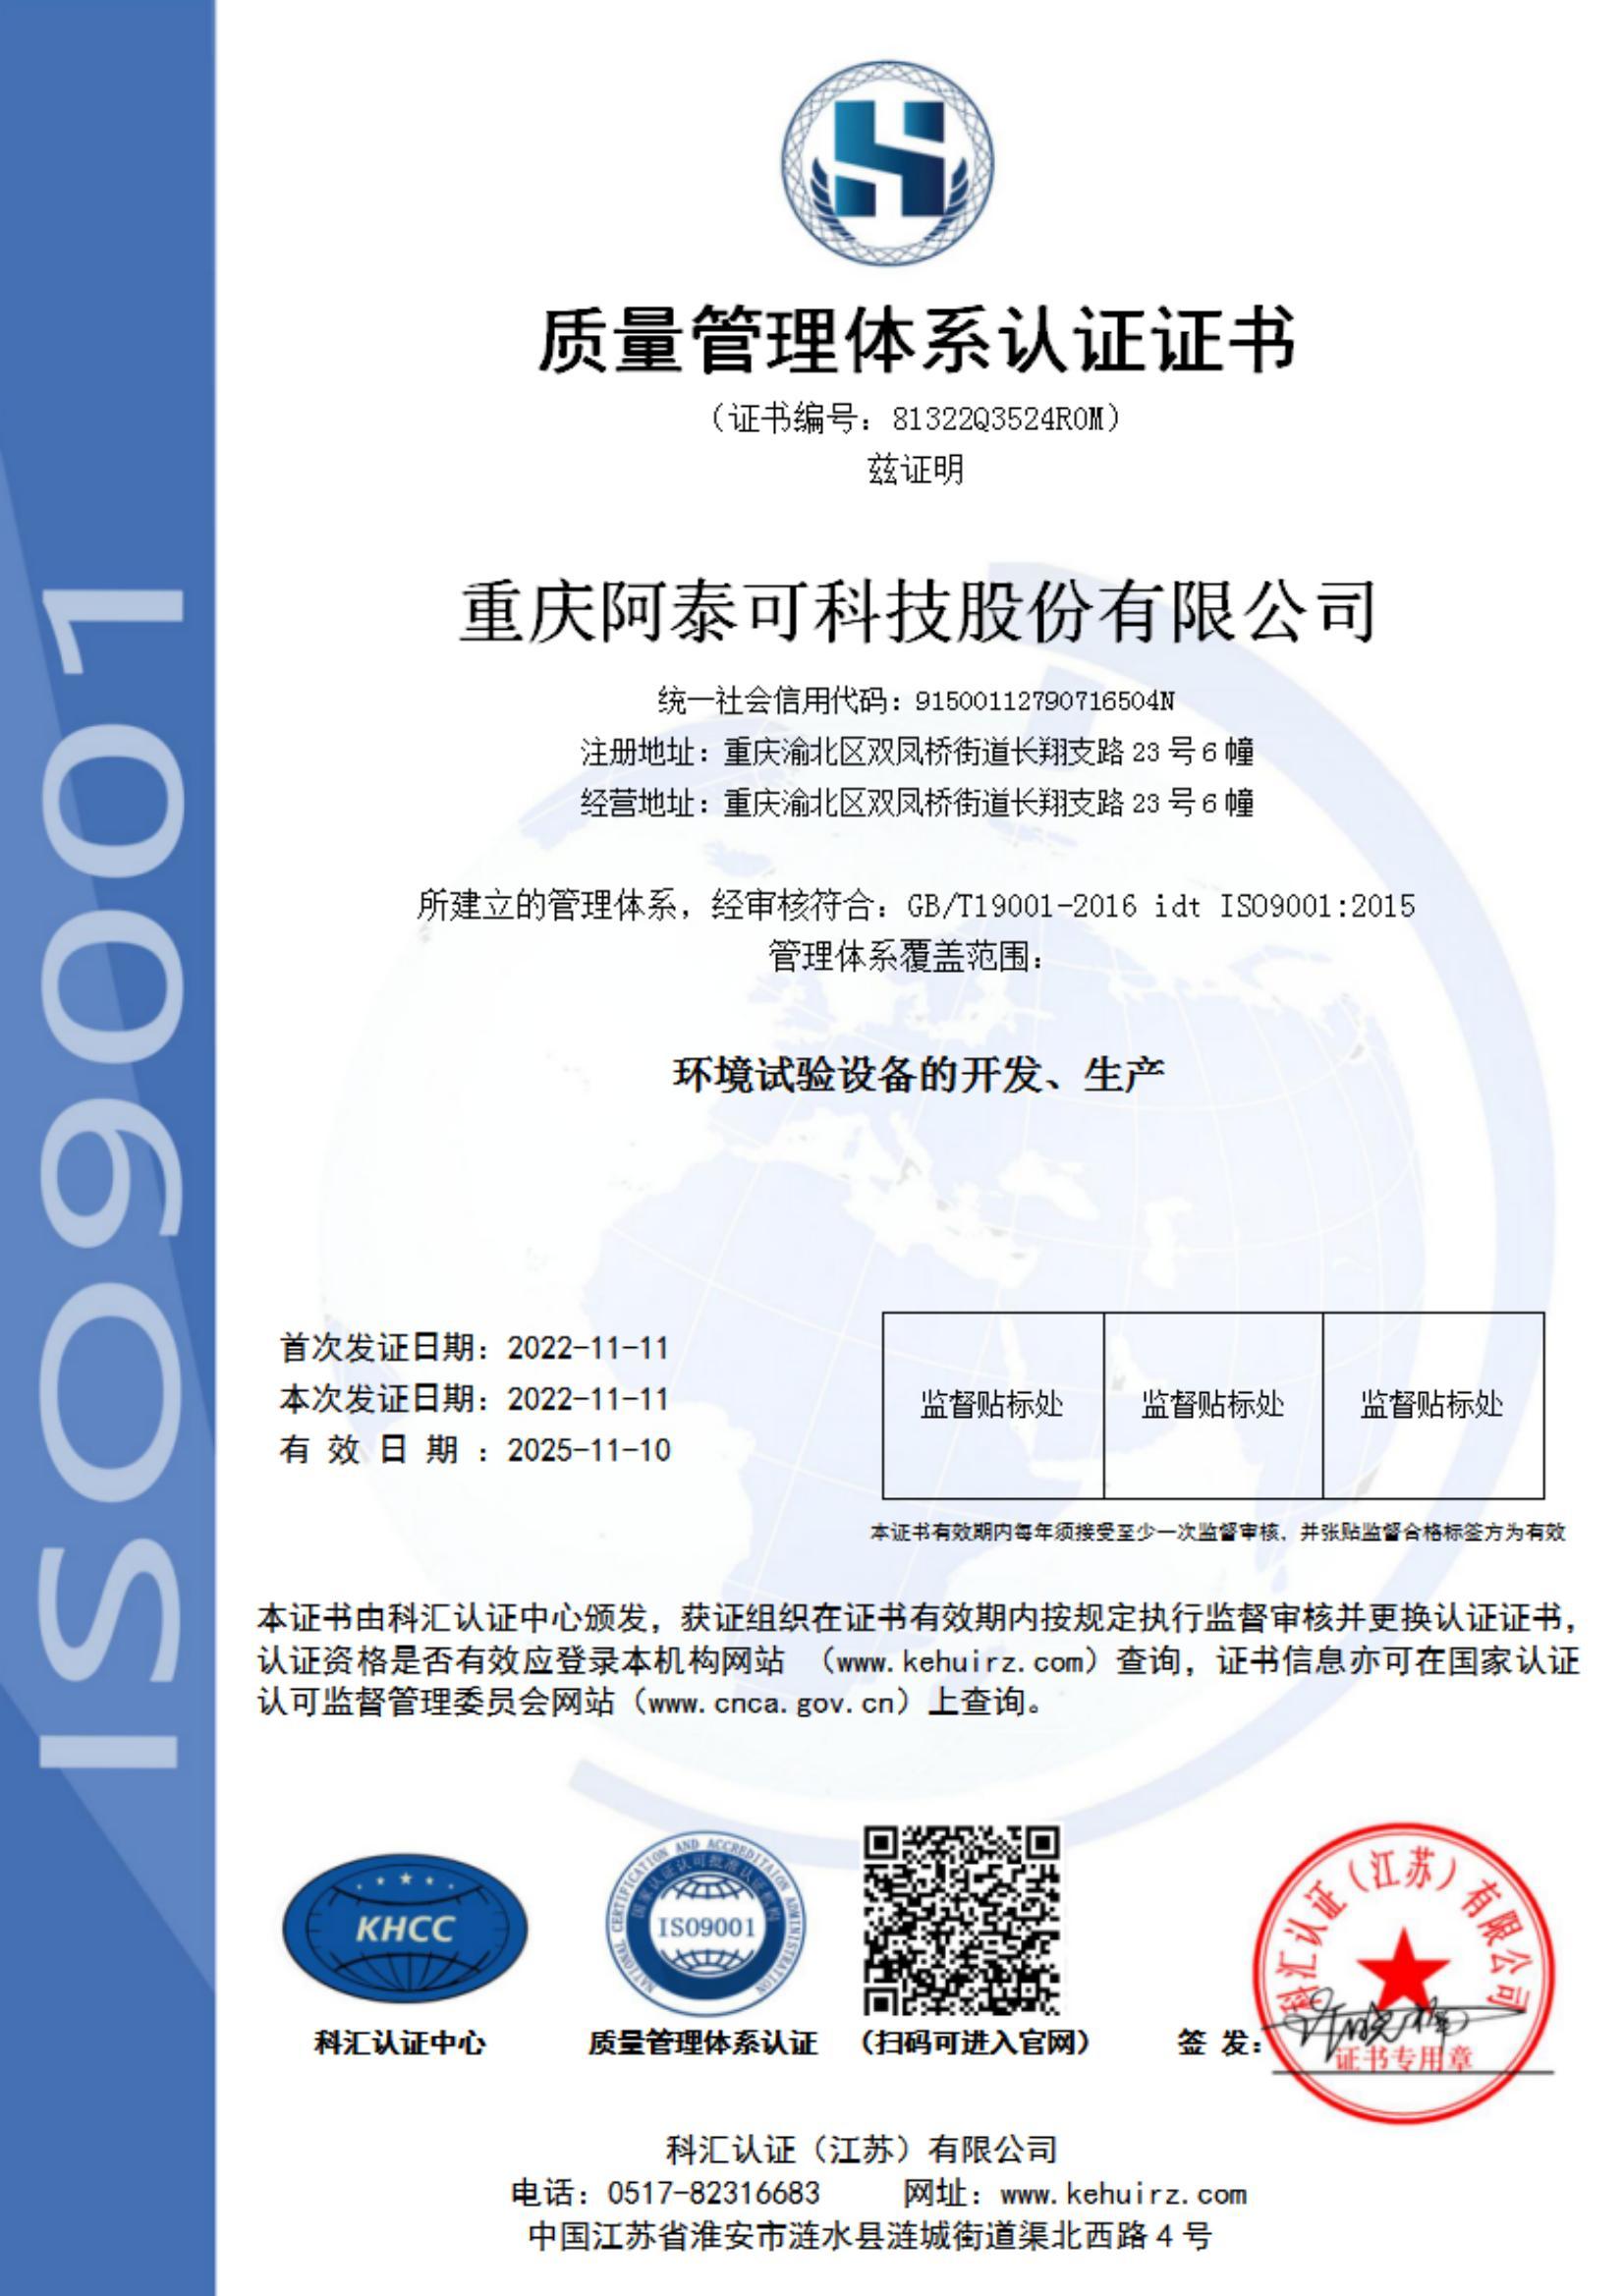 9001质量管理体系认证中文